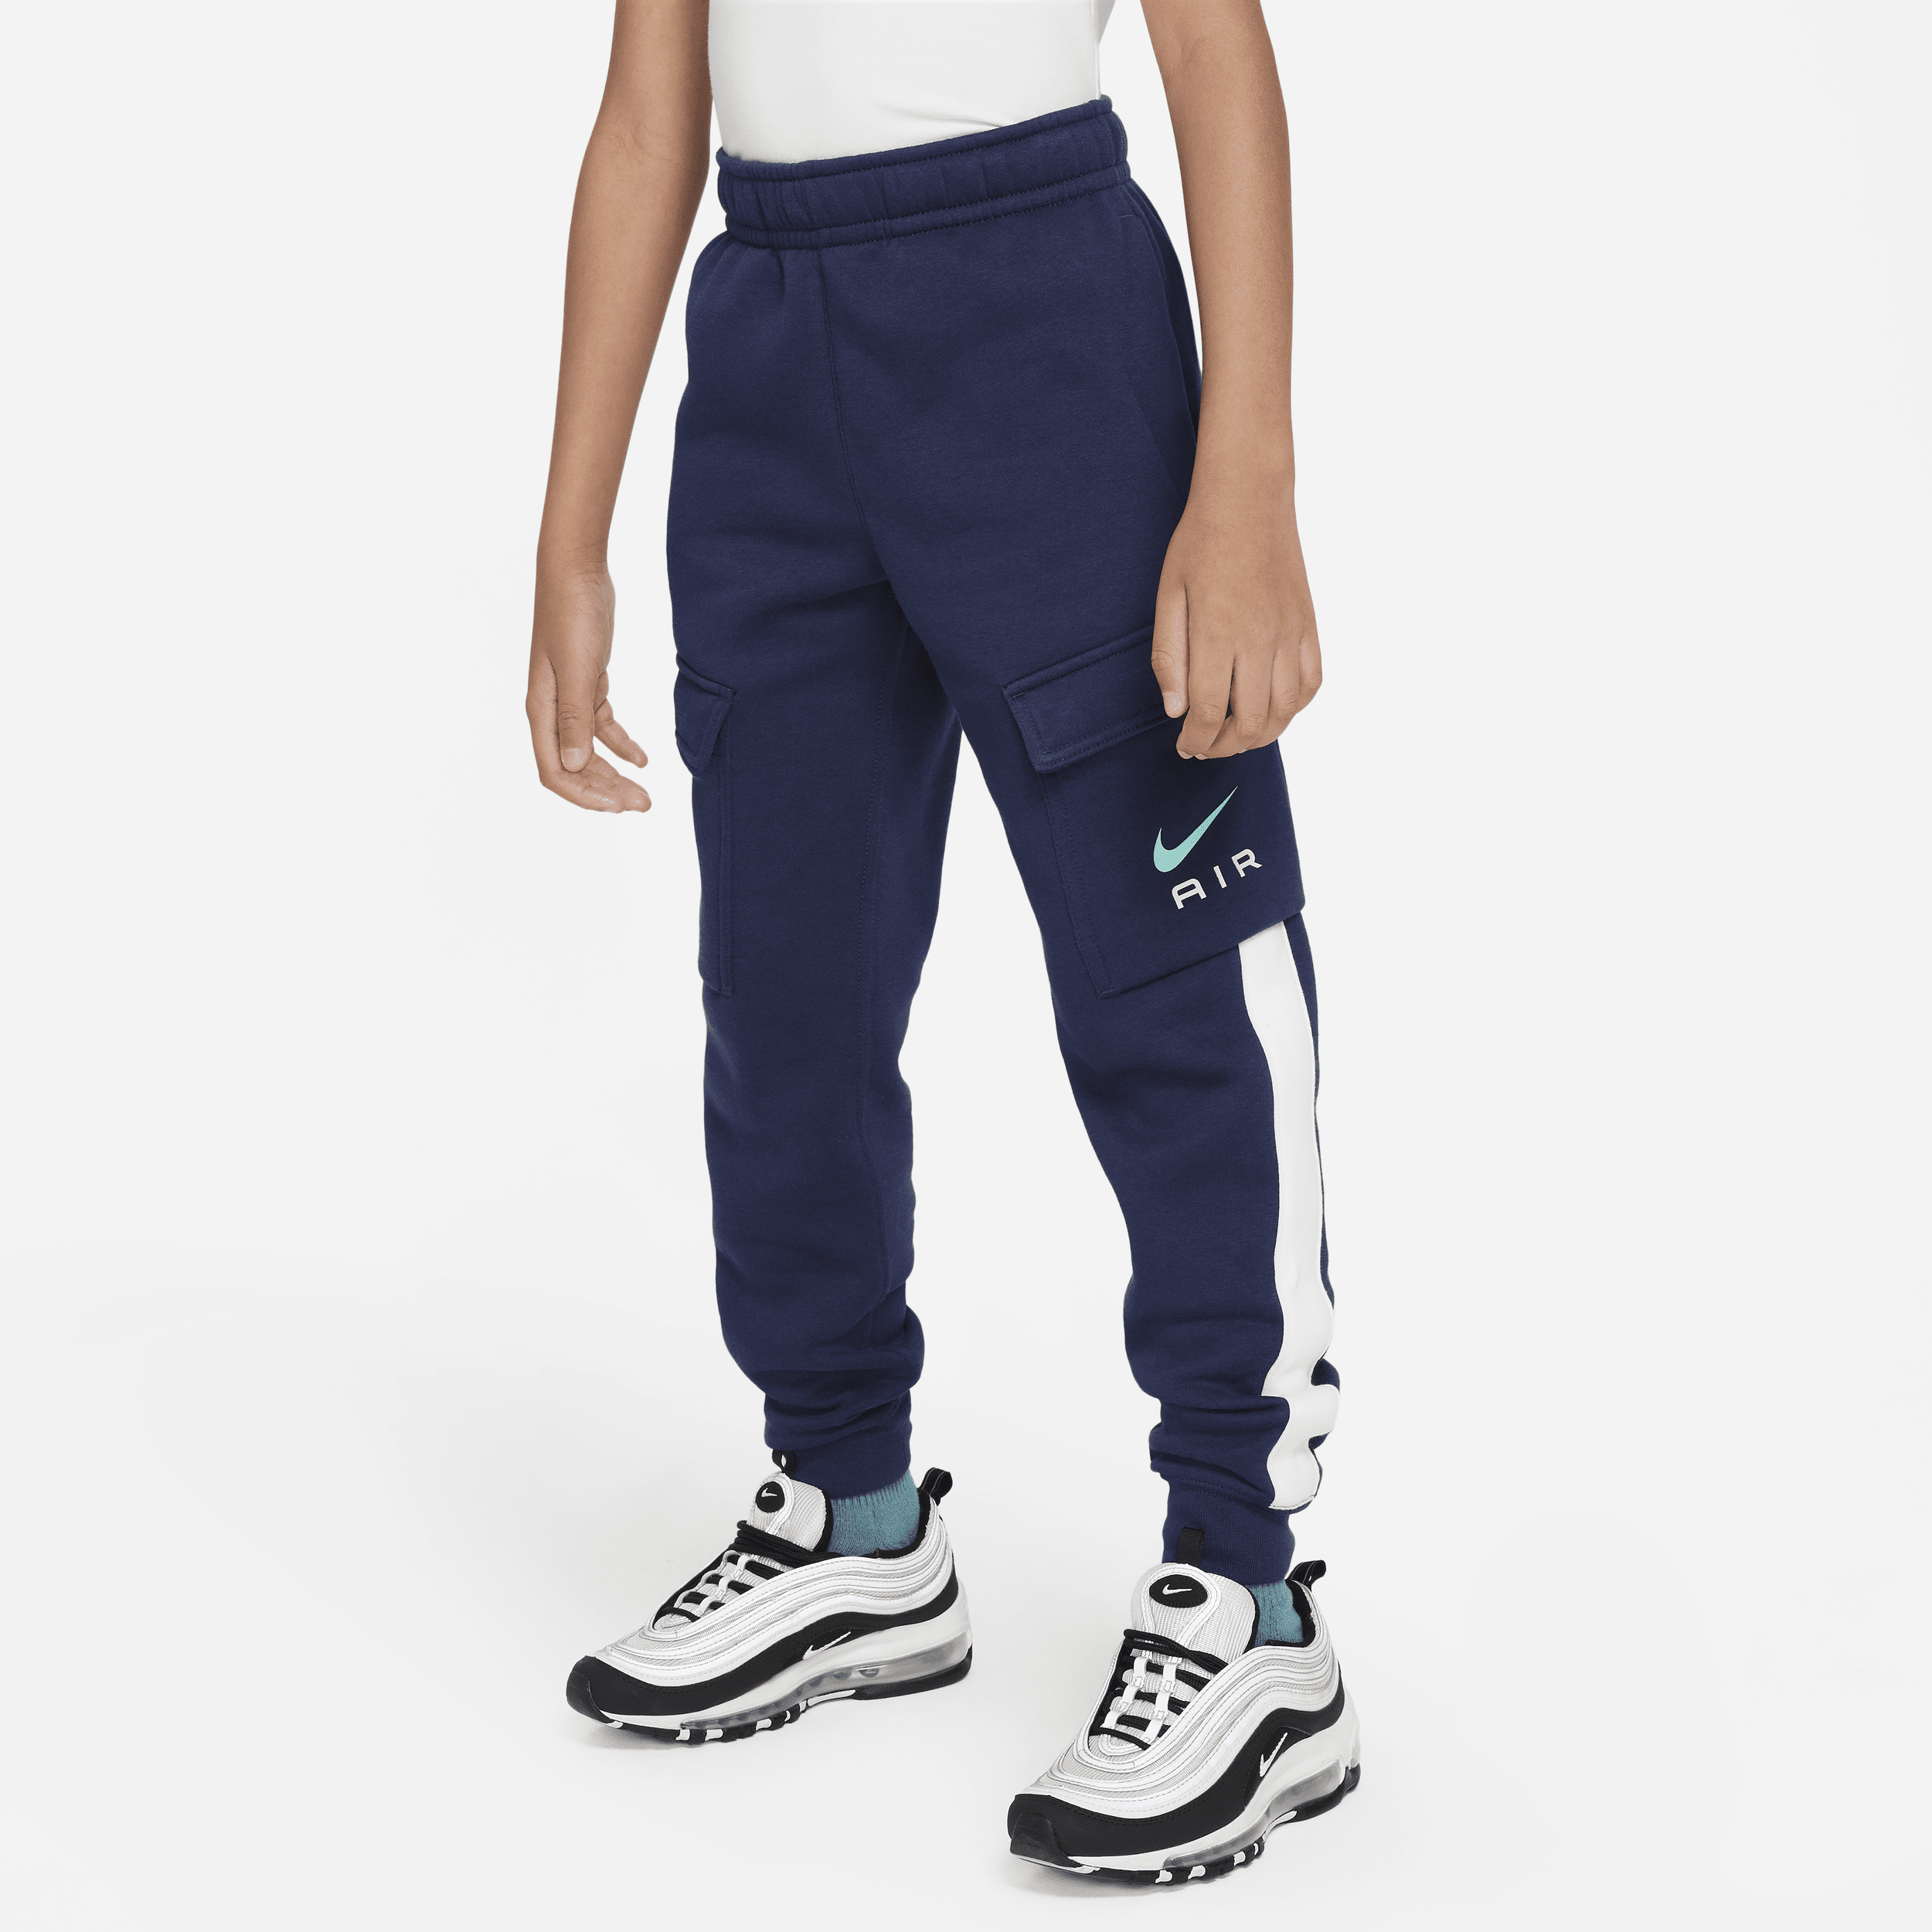 Pantaloni cargo in fleece Nike Air – Ragazzo/a - Blu